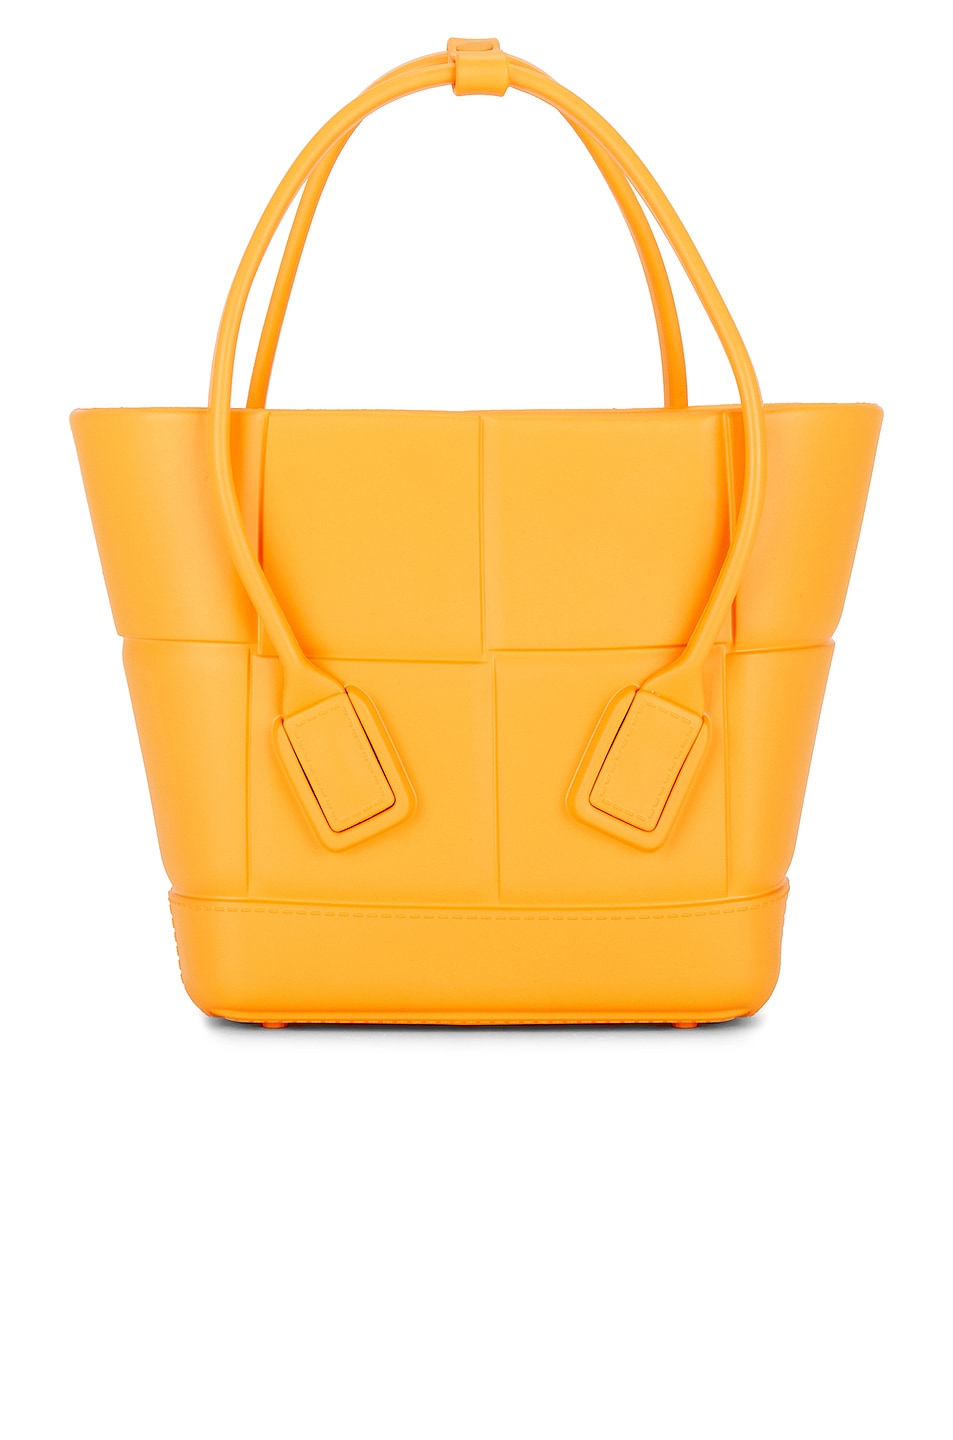 Bottega Veneta Mini Arco Shopping Tote Bag in Orange